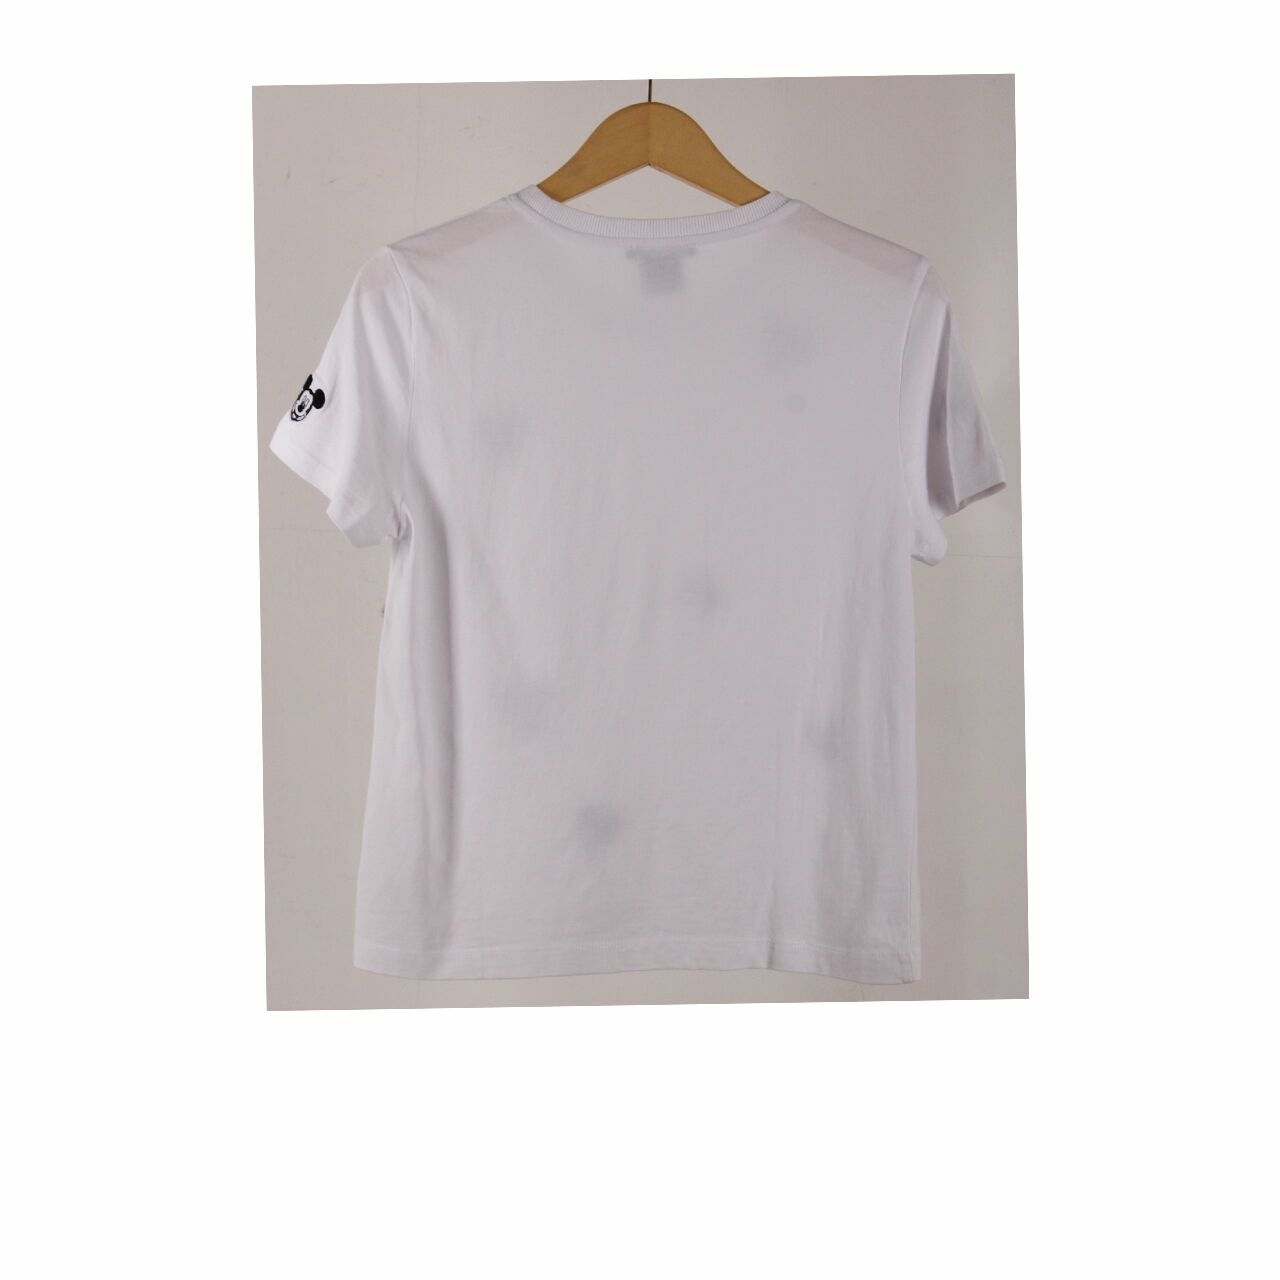 Zara x Disney White Tshirt